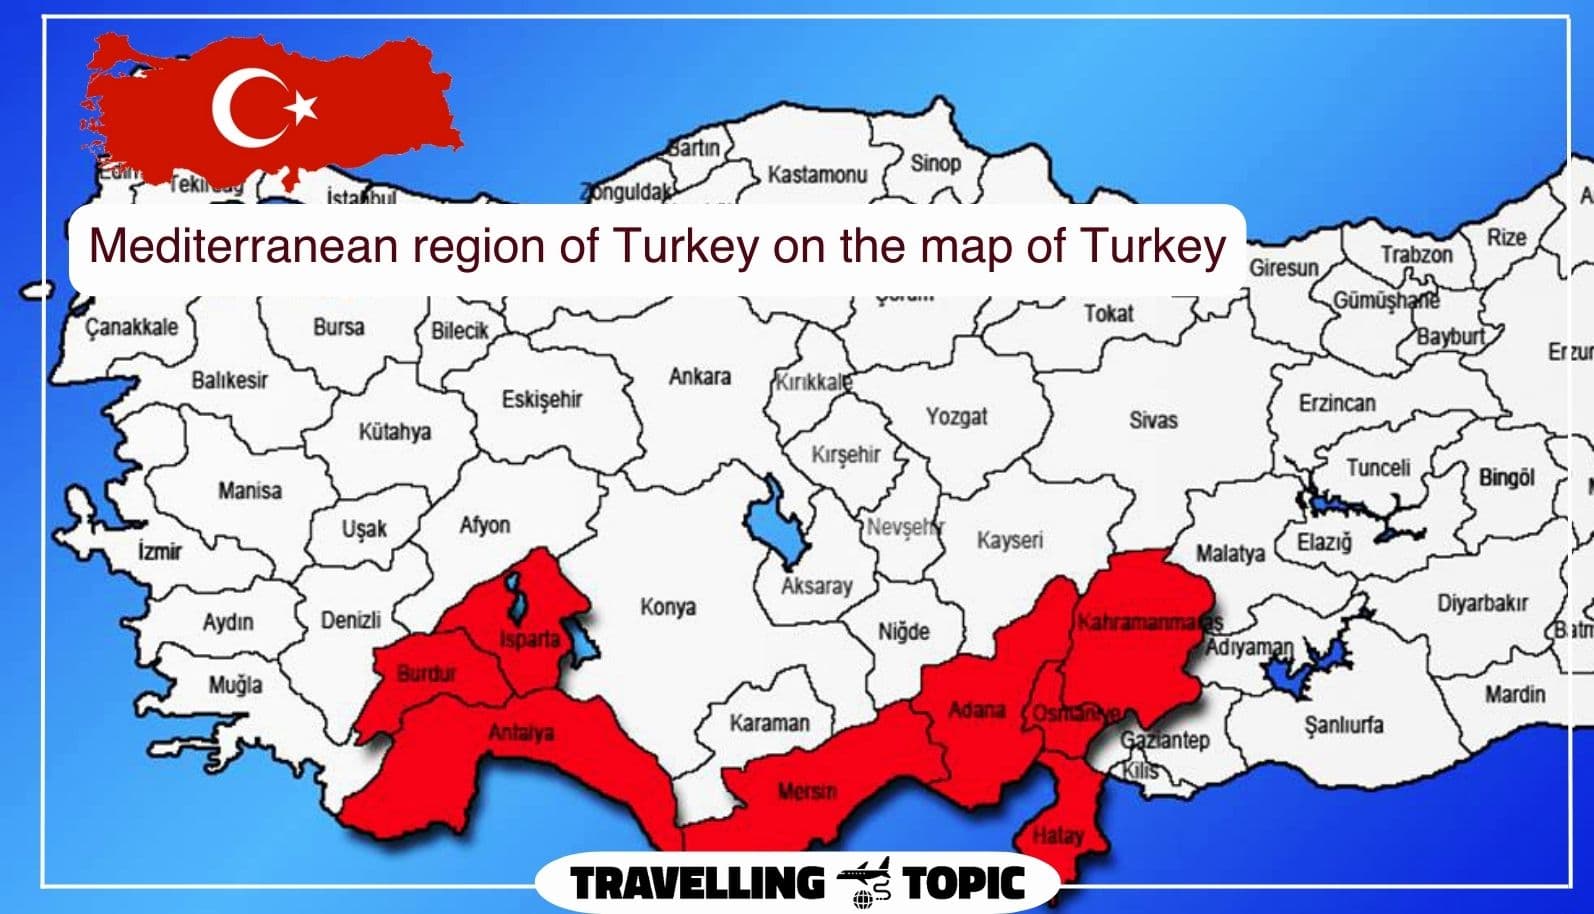 Mediterranean region of Turkey on the map of Turkey